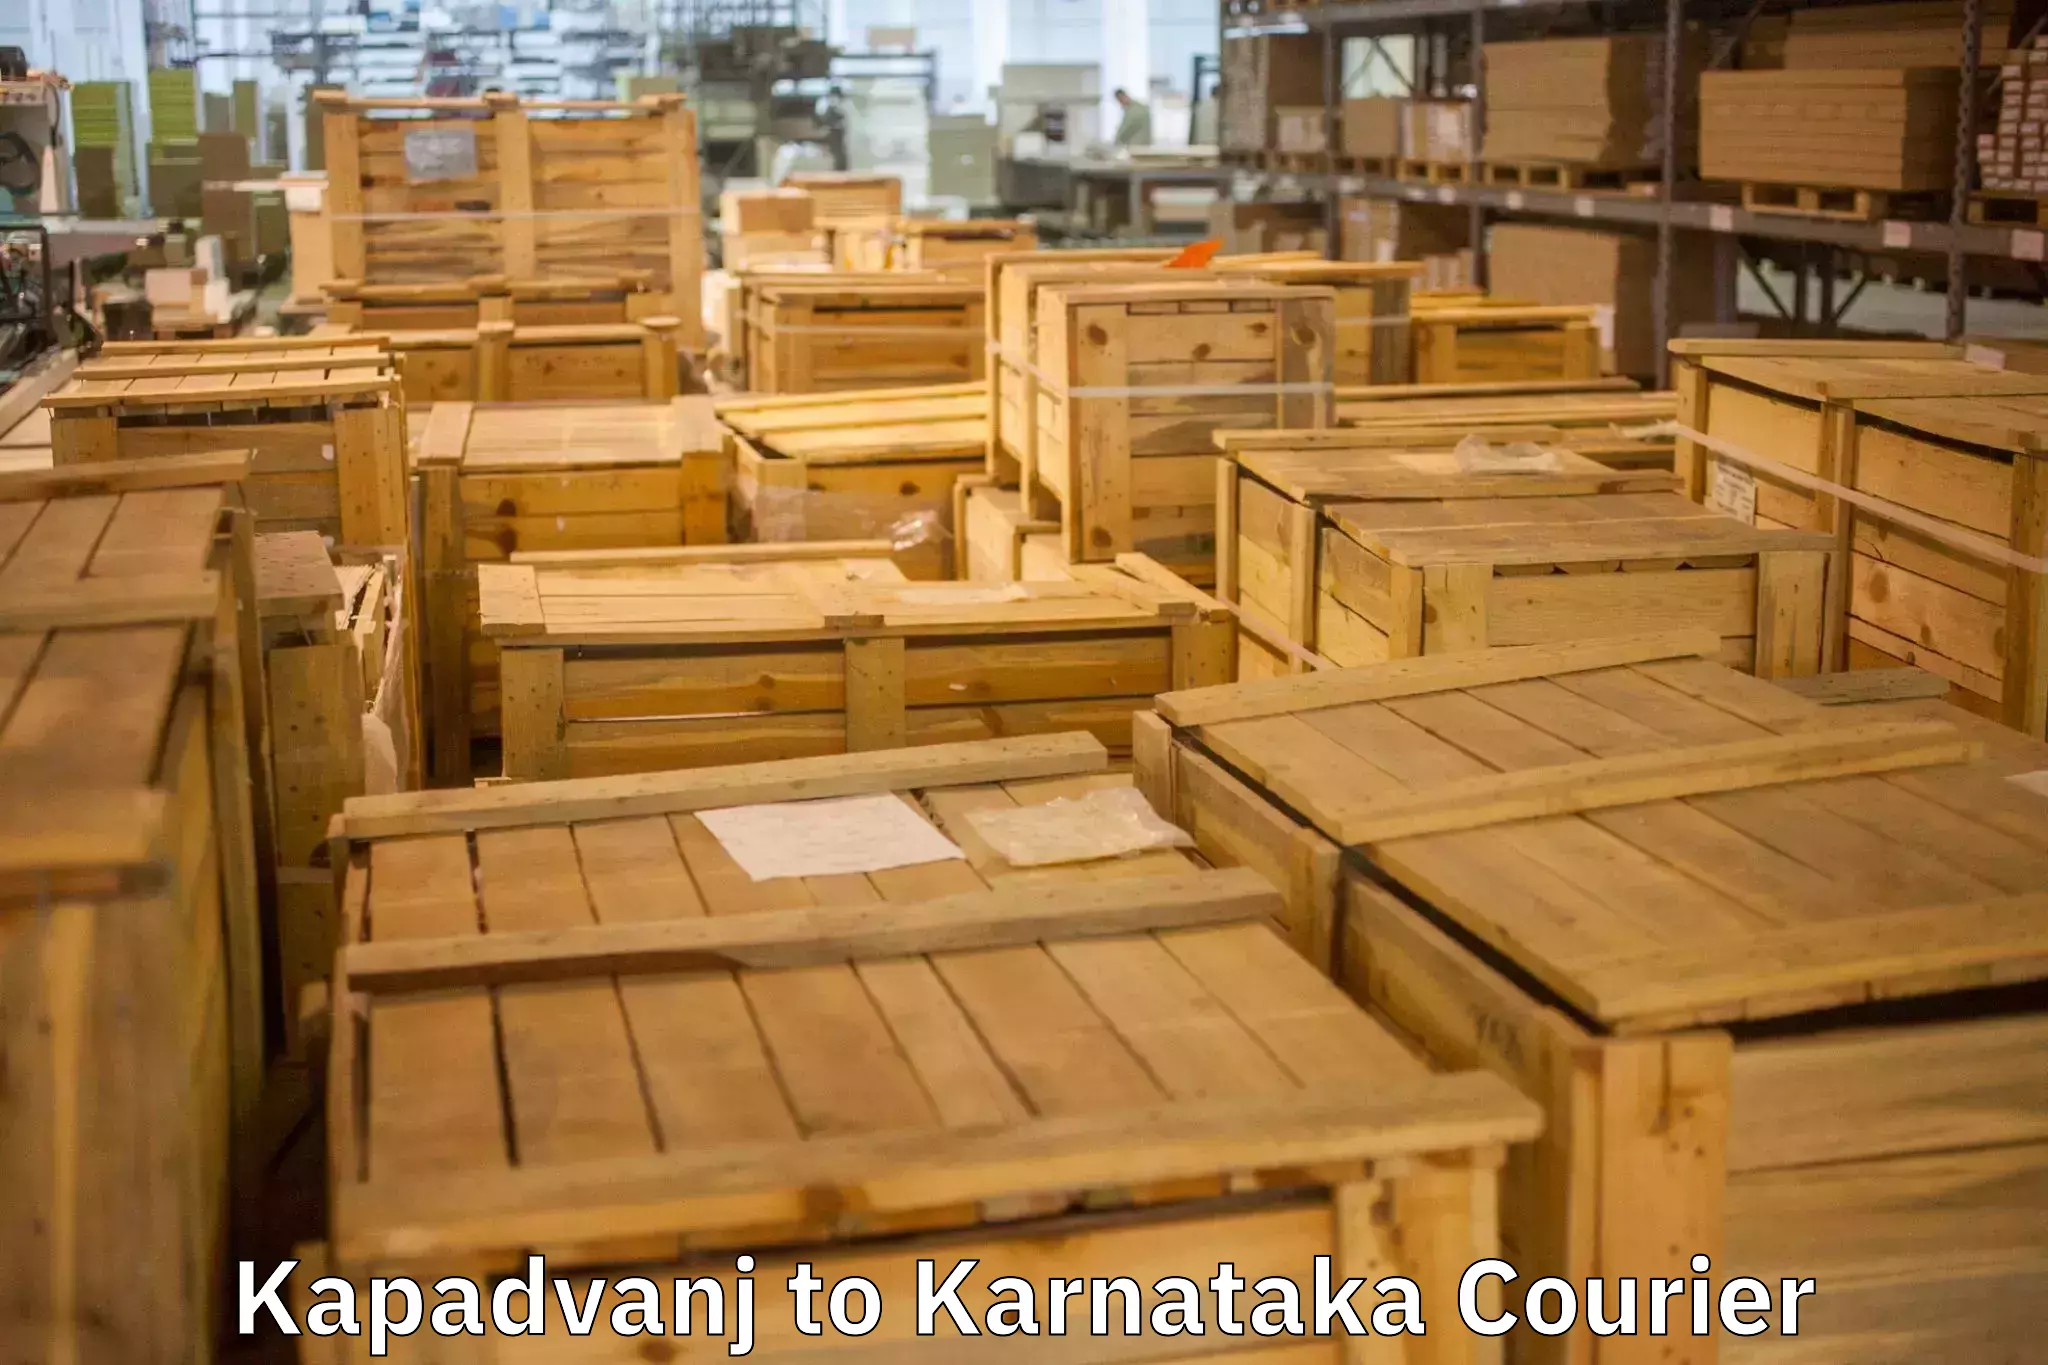 Stress-free furniture moving Kapadvanj to Deodurga